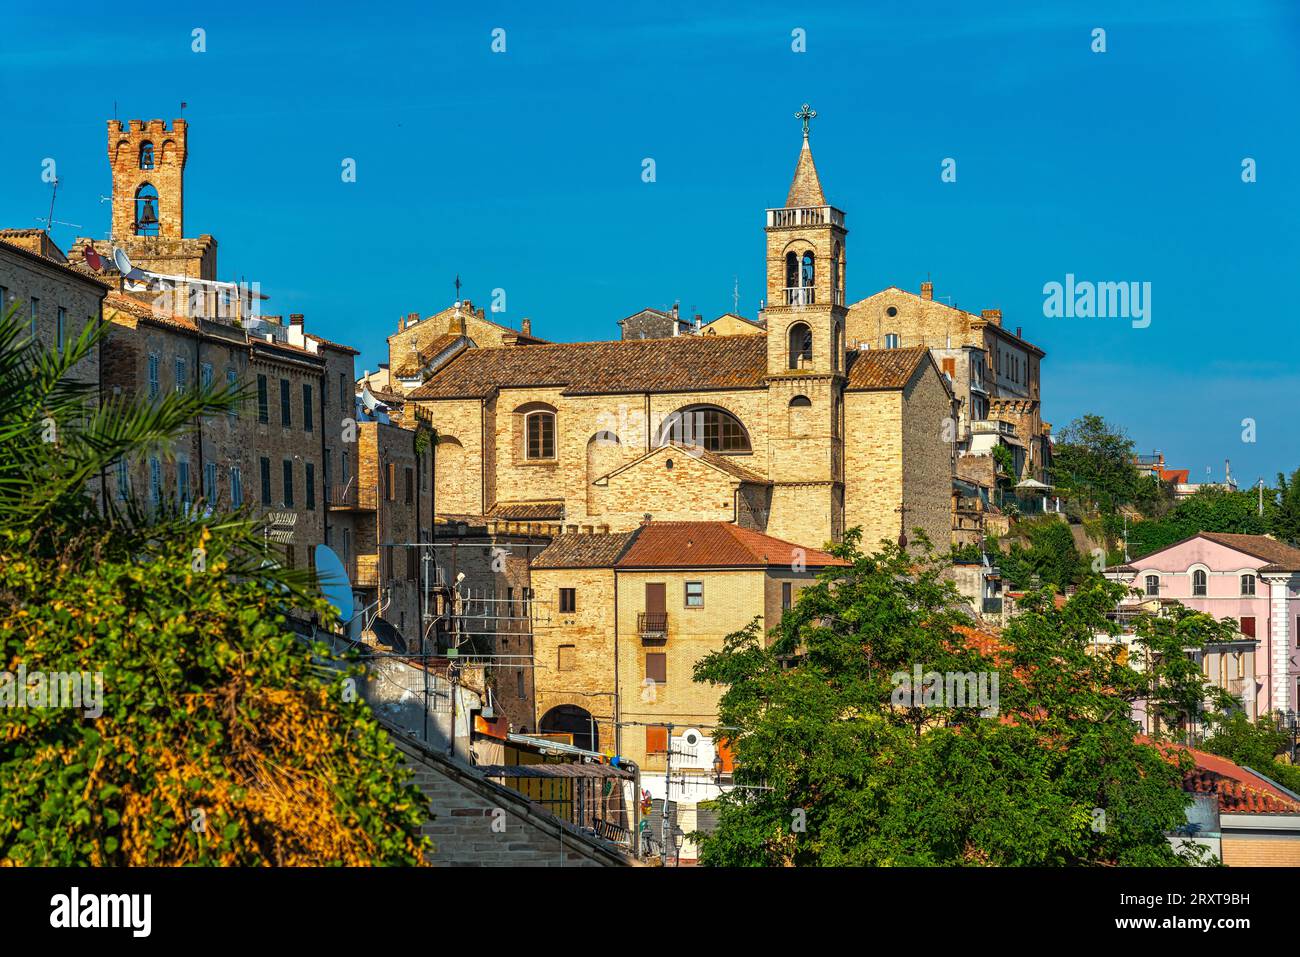 Panorama de Acquaviva Picena con la iglesia dedicada a San Nicolò y la torre del reloj cívico. Acquaviva Picena, provincia de Ascoli, Italia, Europa Foto de stock